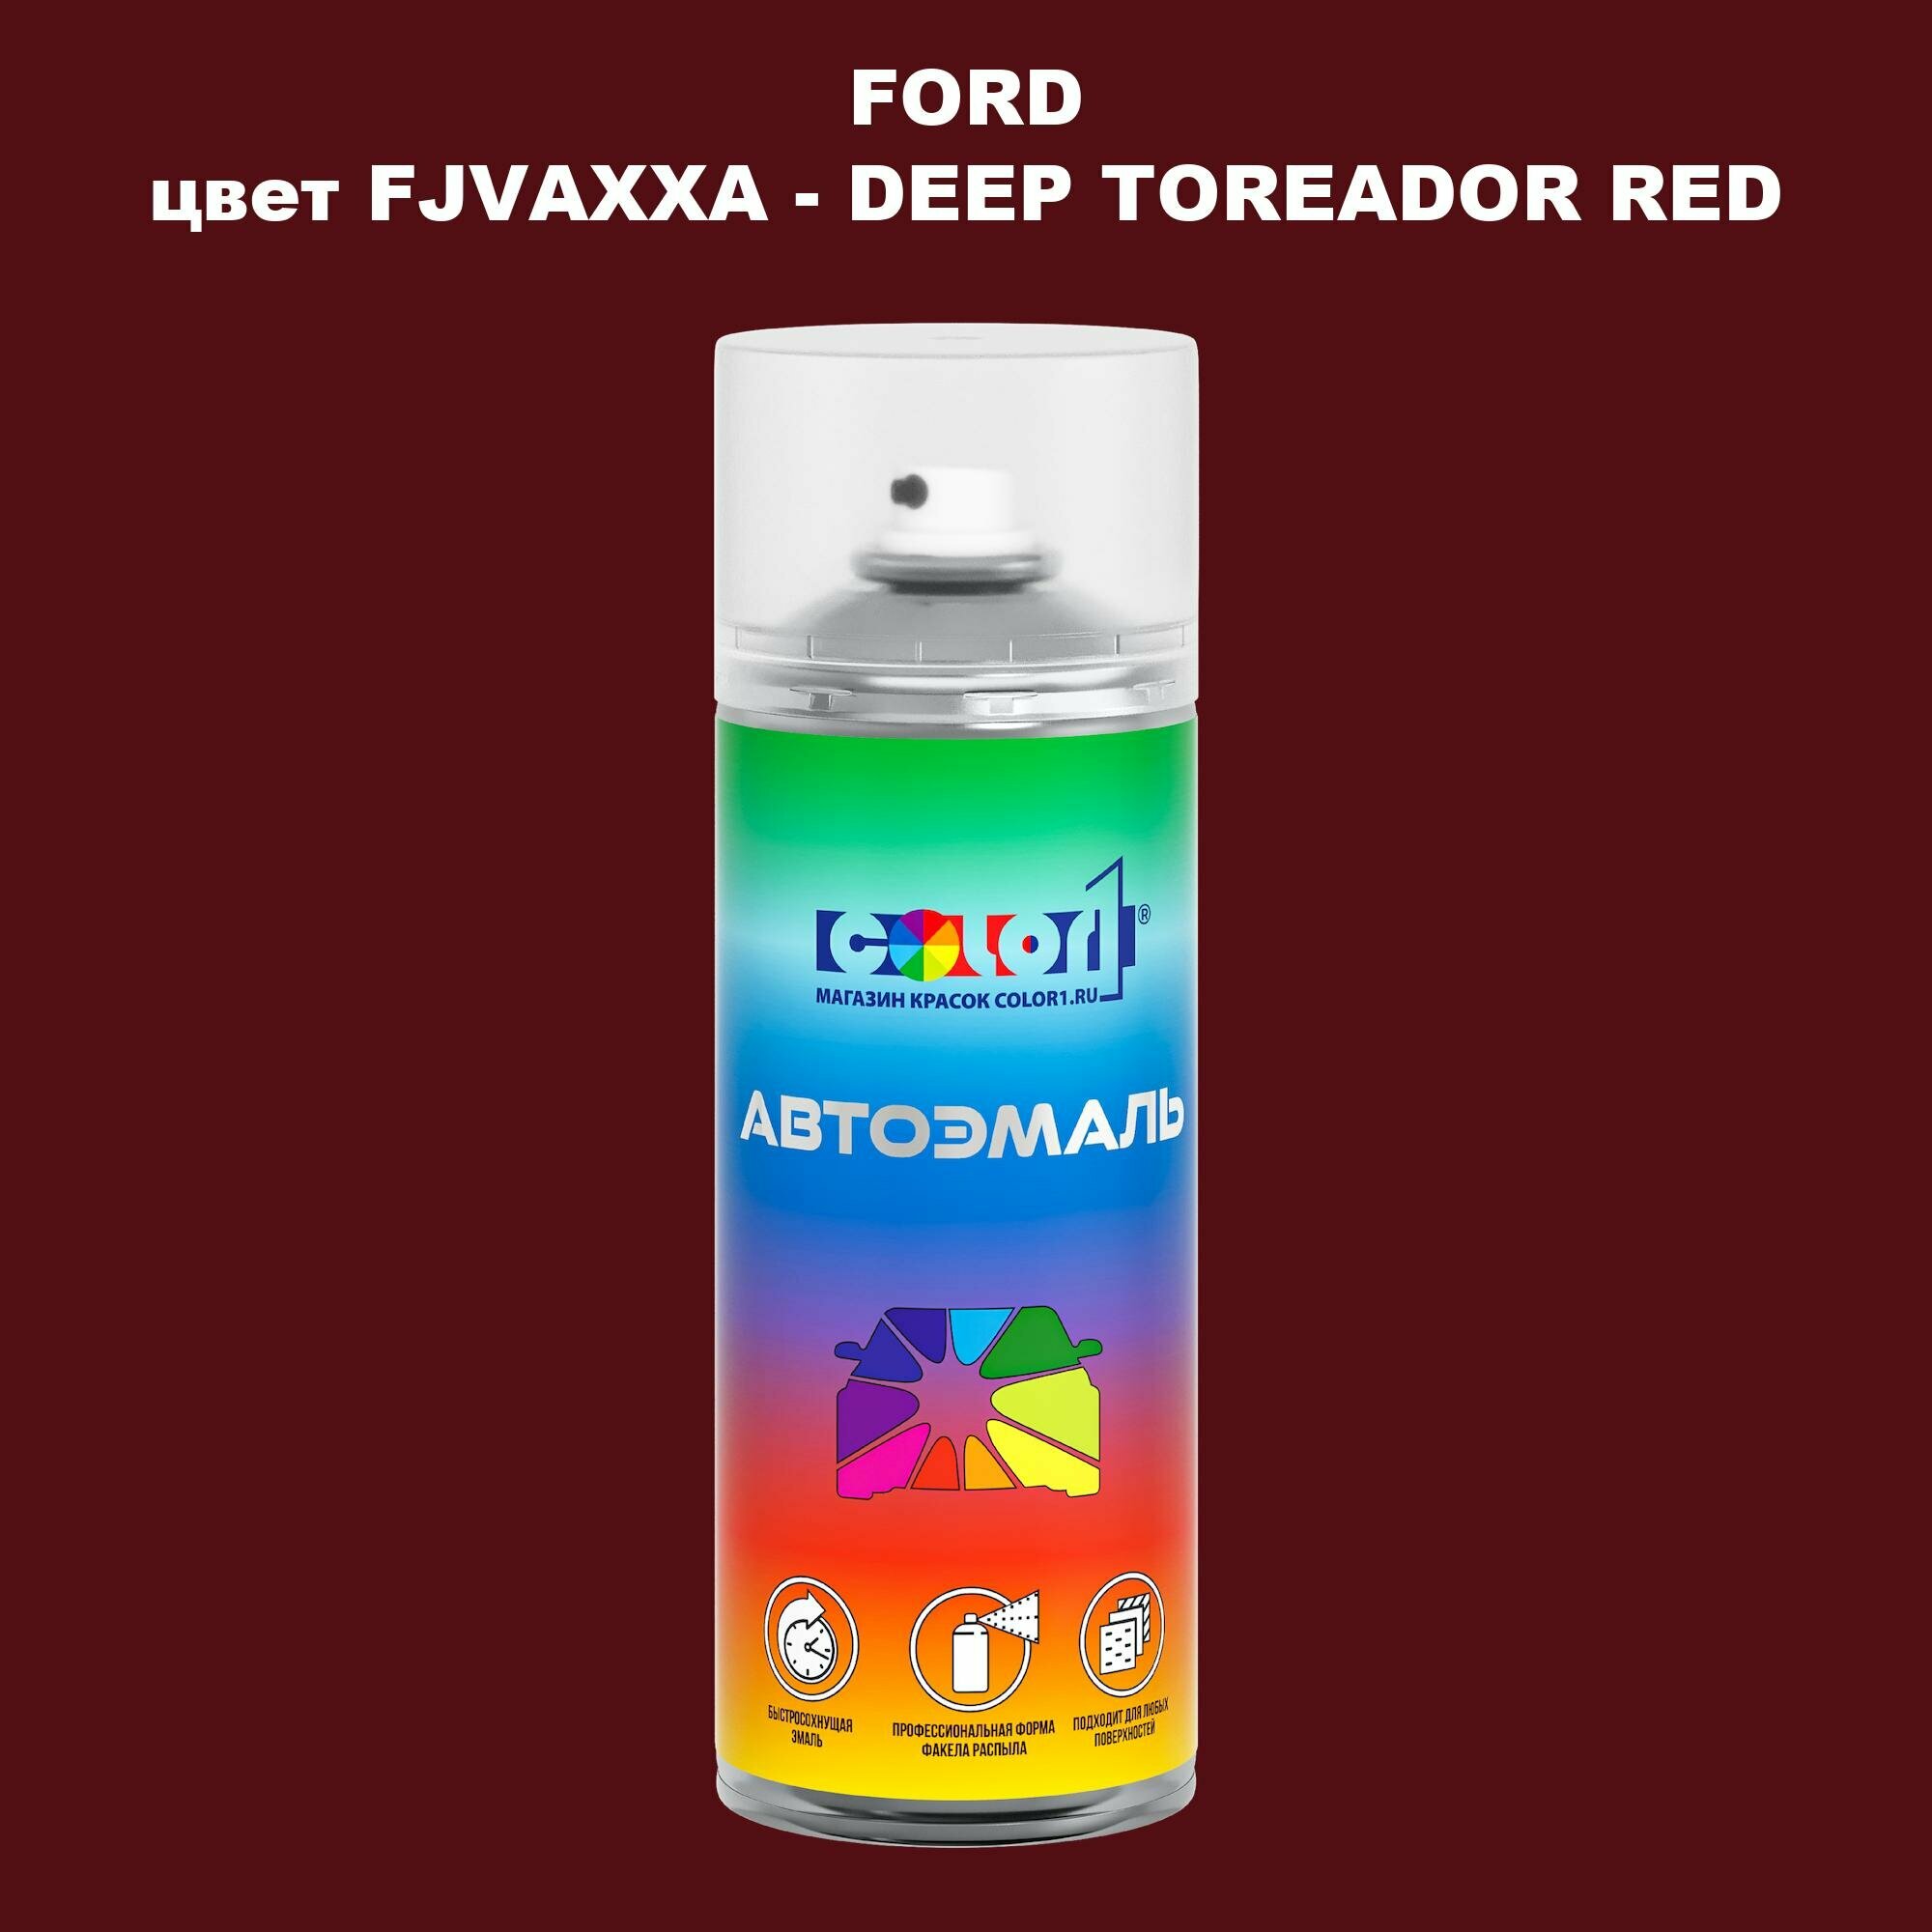 Аэрозольная краска COLOR1 для FORD цвет FJVAXXA - DEEP TOREADOR RED